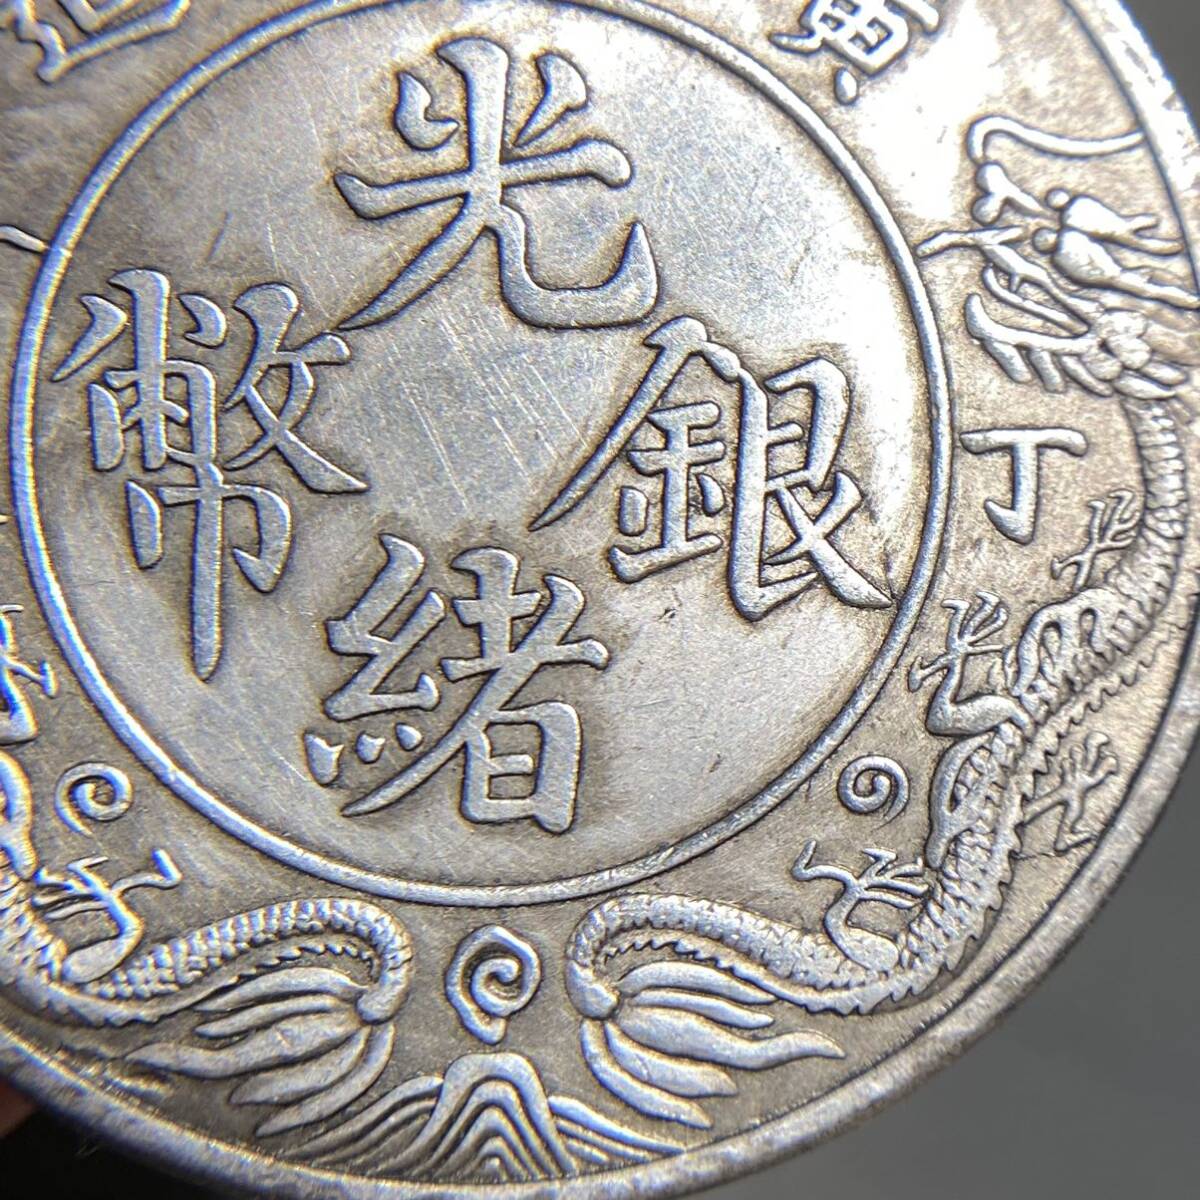 中国古銭 光緒銀幣 約26.78g 広東省造 一両銀貨 一円貨幣 硬貨骨董品コインコレクションの画像4